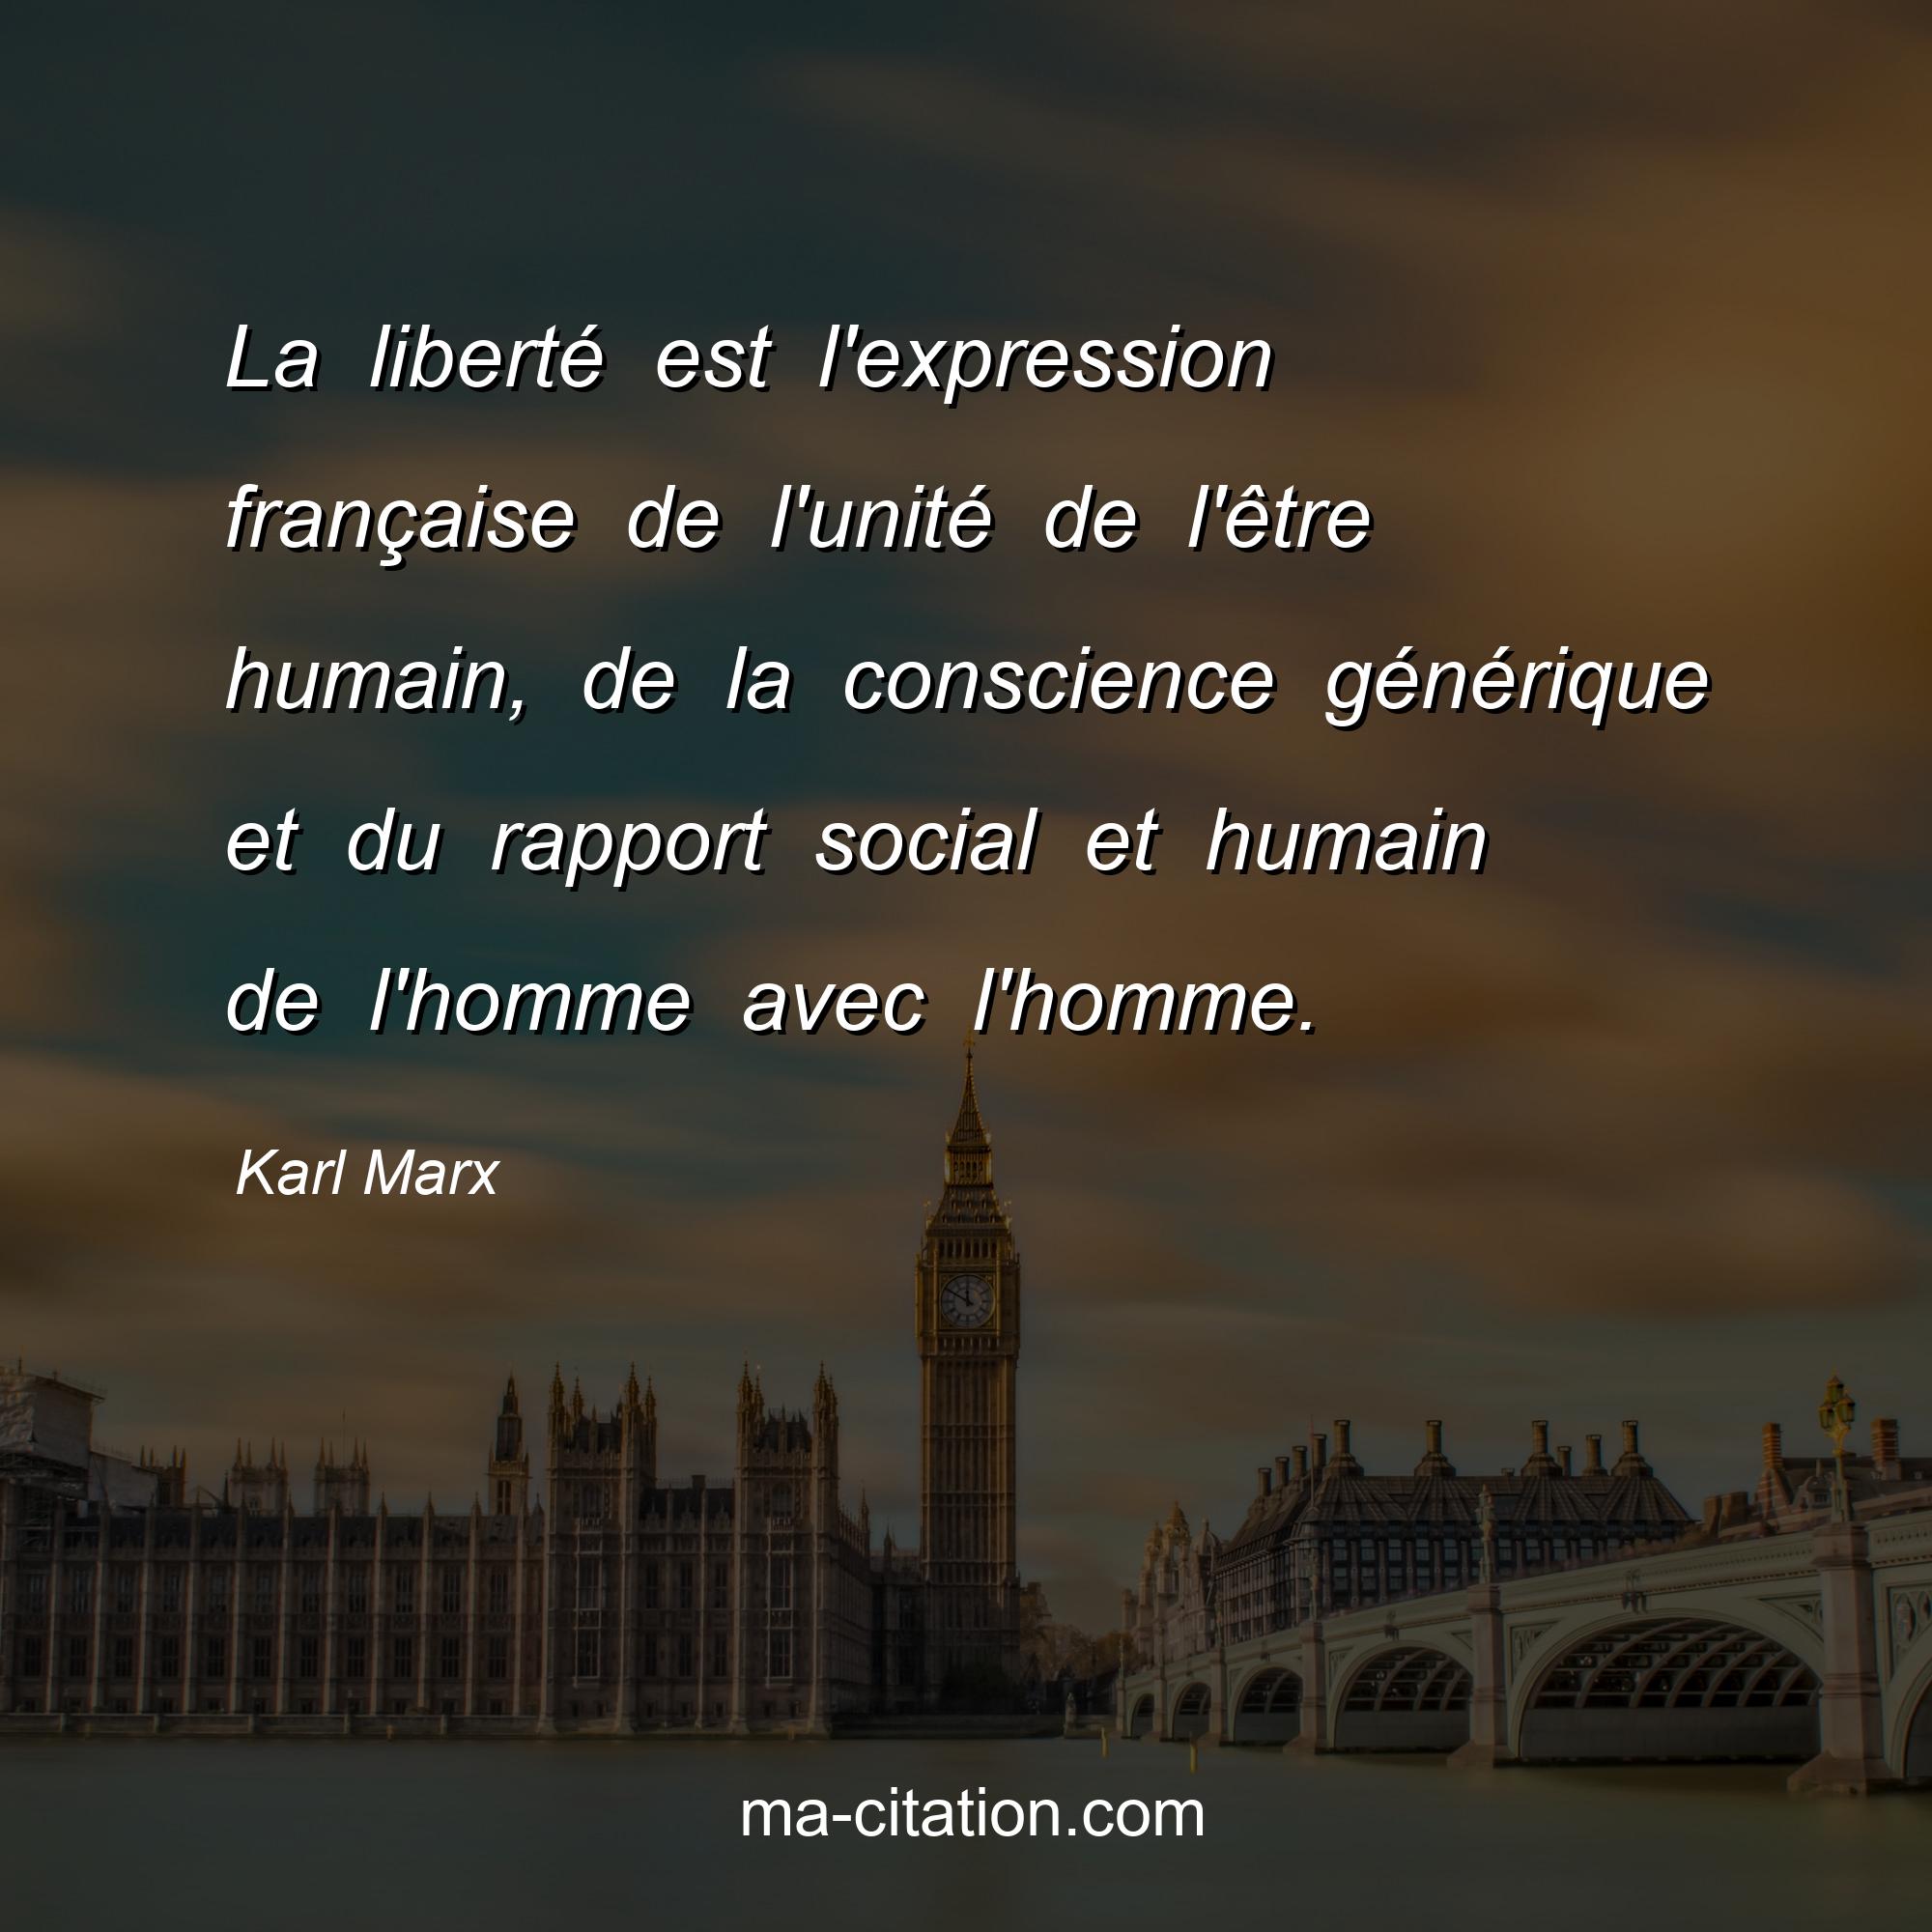 Karl Marx : La liberté est l'expression française de l'unité de l'être humain, de la conscience générique et du rapport social et humain de l'homme avec l'homme.